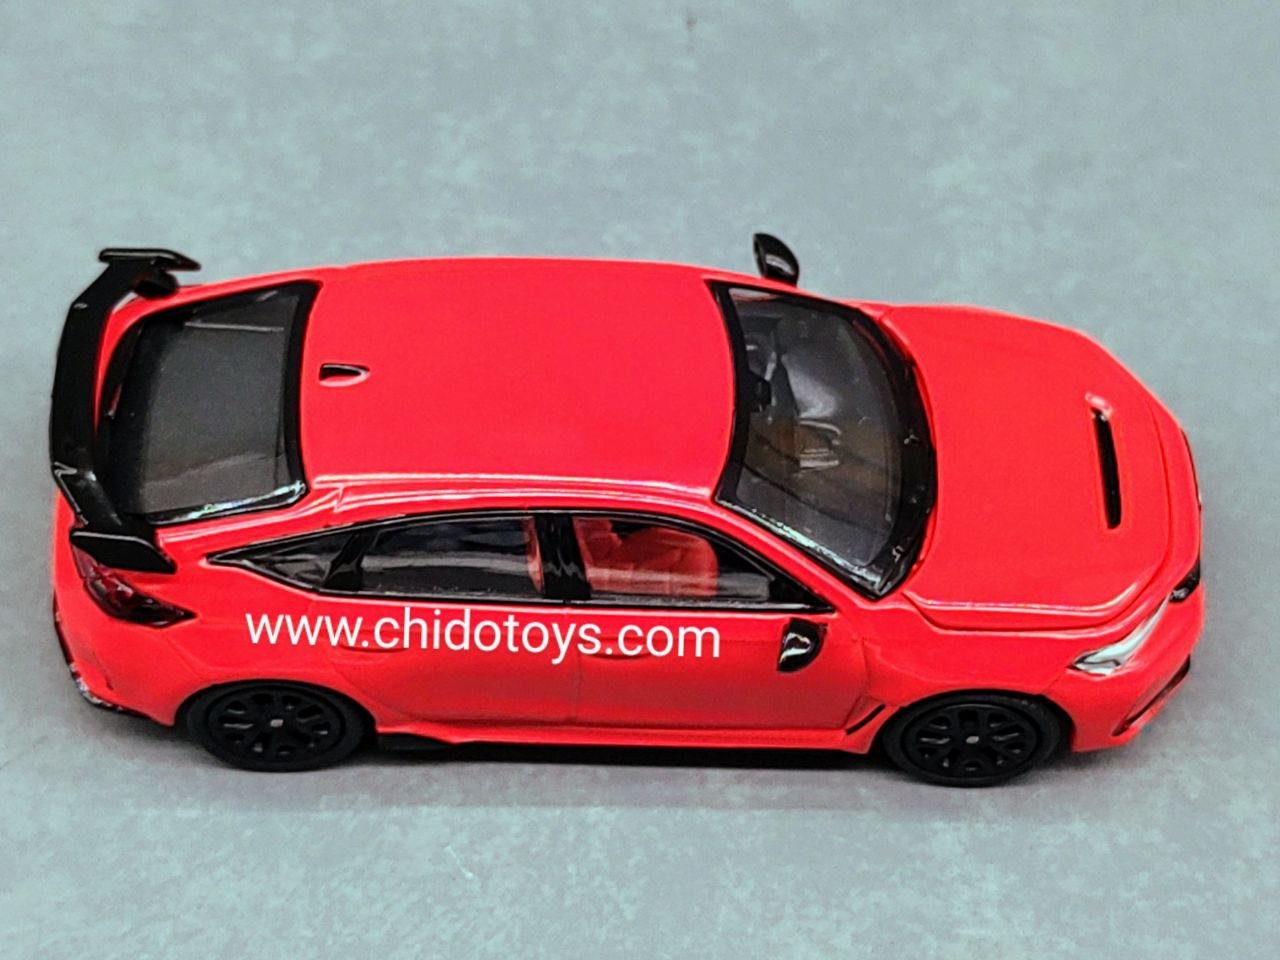 Auto a escala marca Pop Race escala 1/64 modelo Honda Civic Type R. - Chido Toys